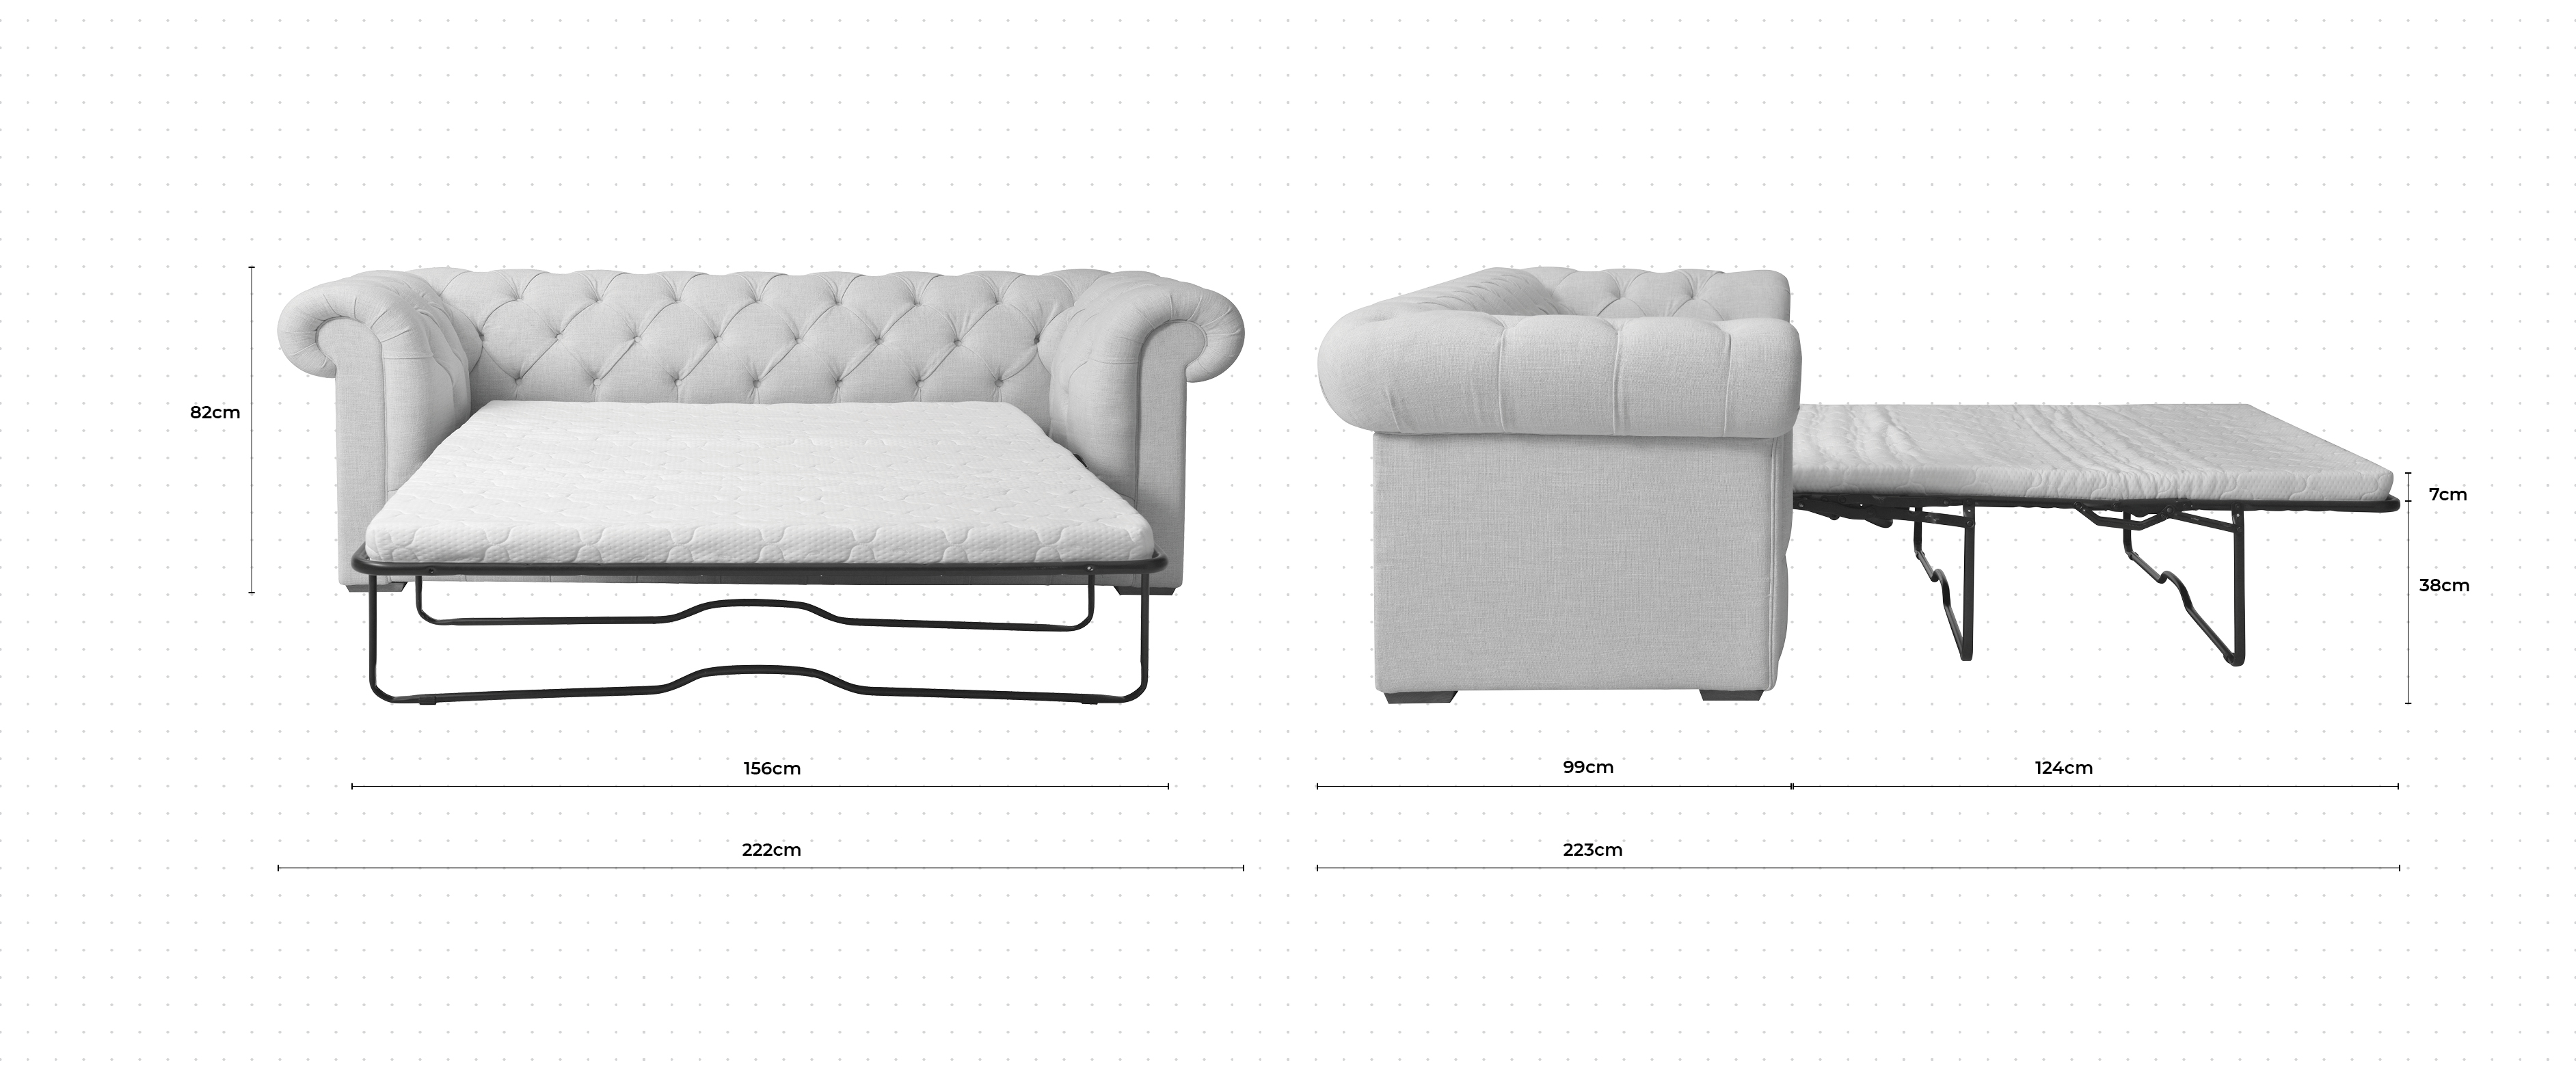 Gainsborough 2.5 Seater Sofa Bed dimensions